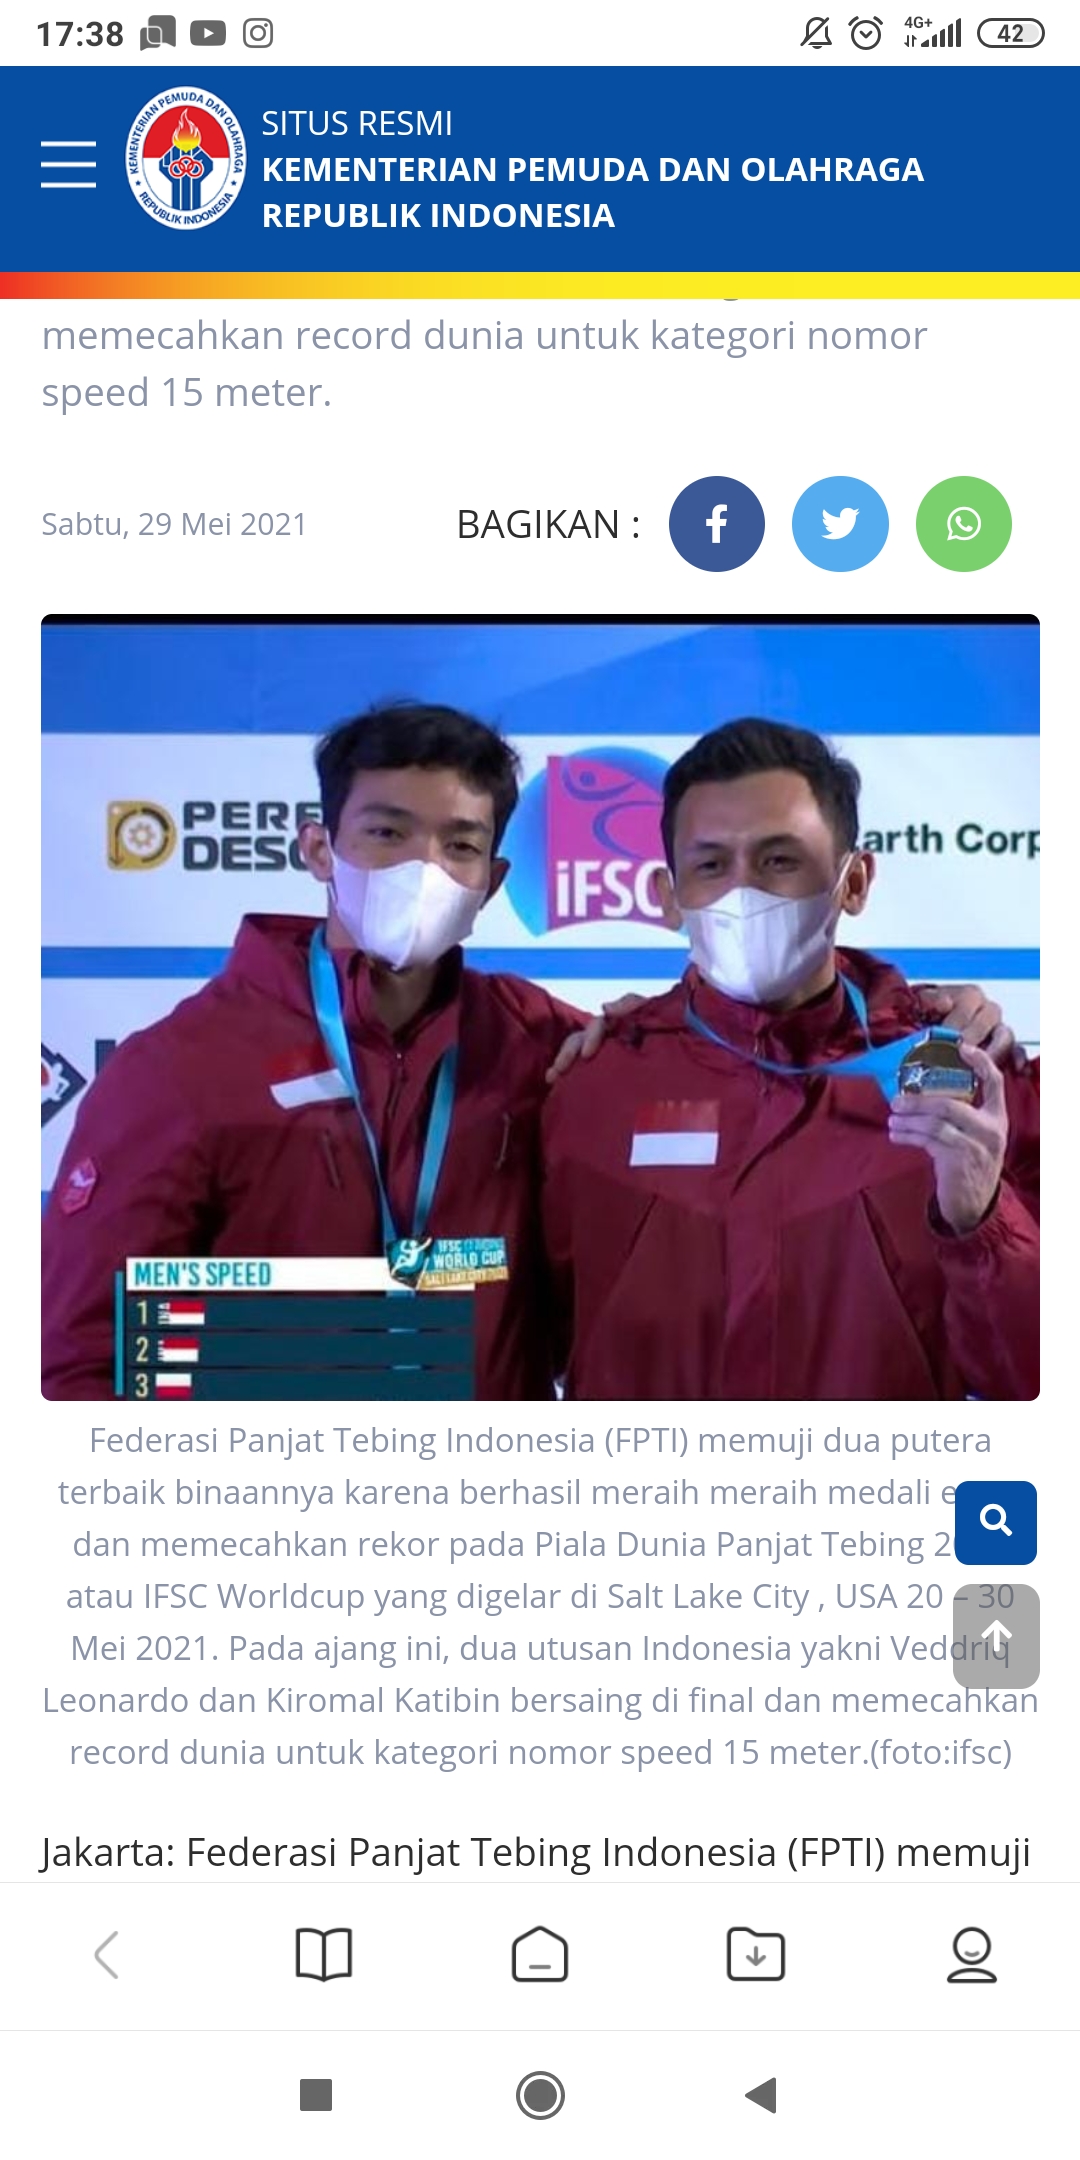 Panjat Tebing Indonesia Berharap Emas di Nomor Speed di Olimpiade Paris 2024